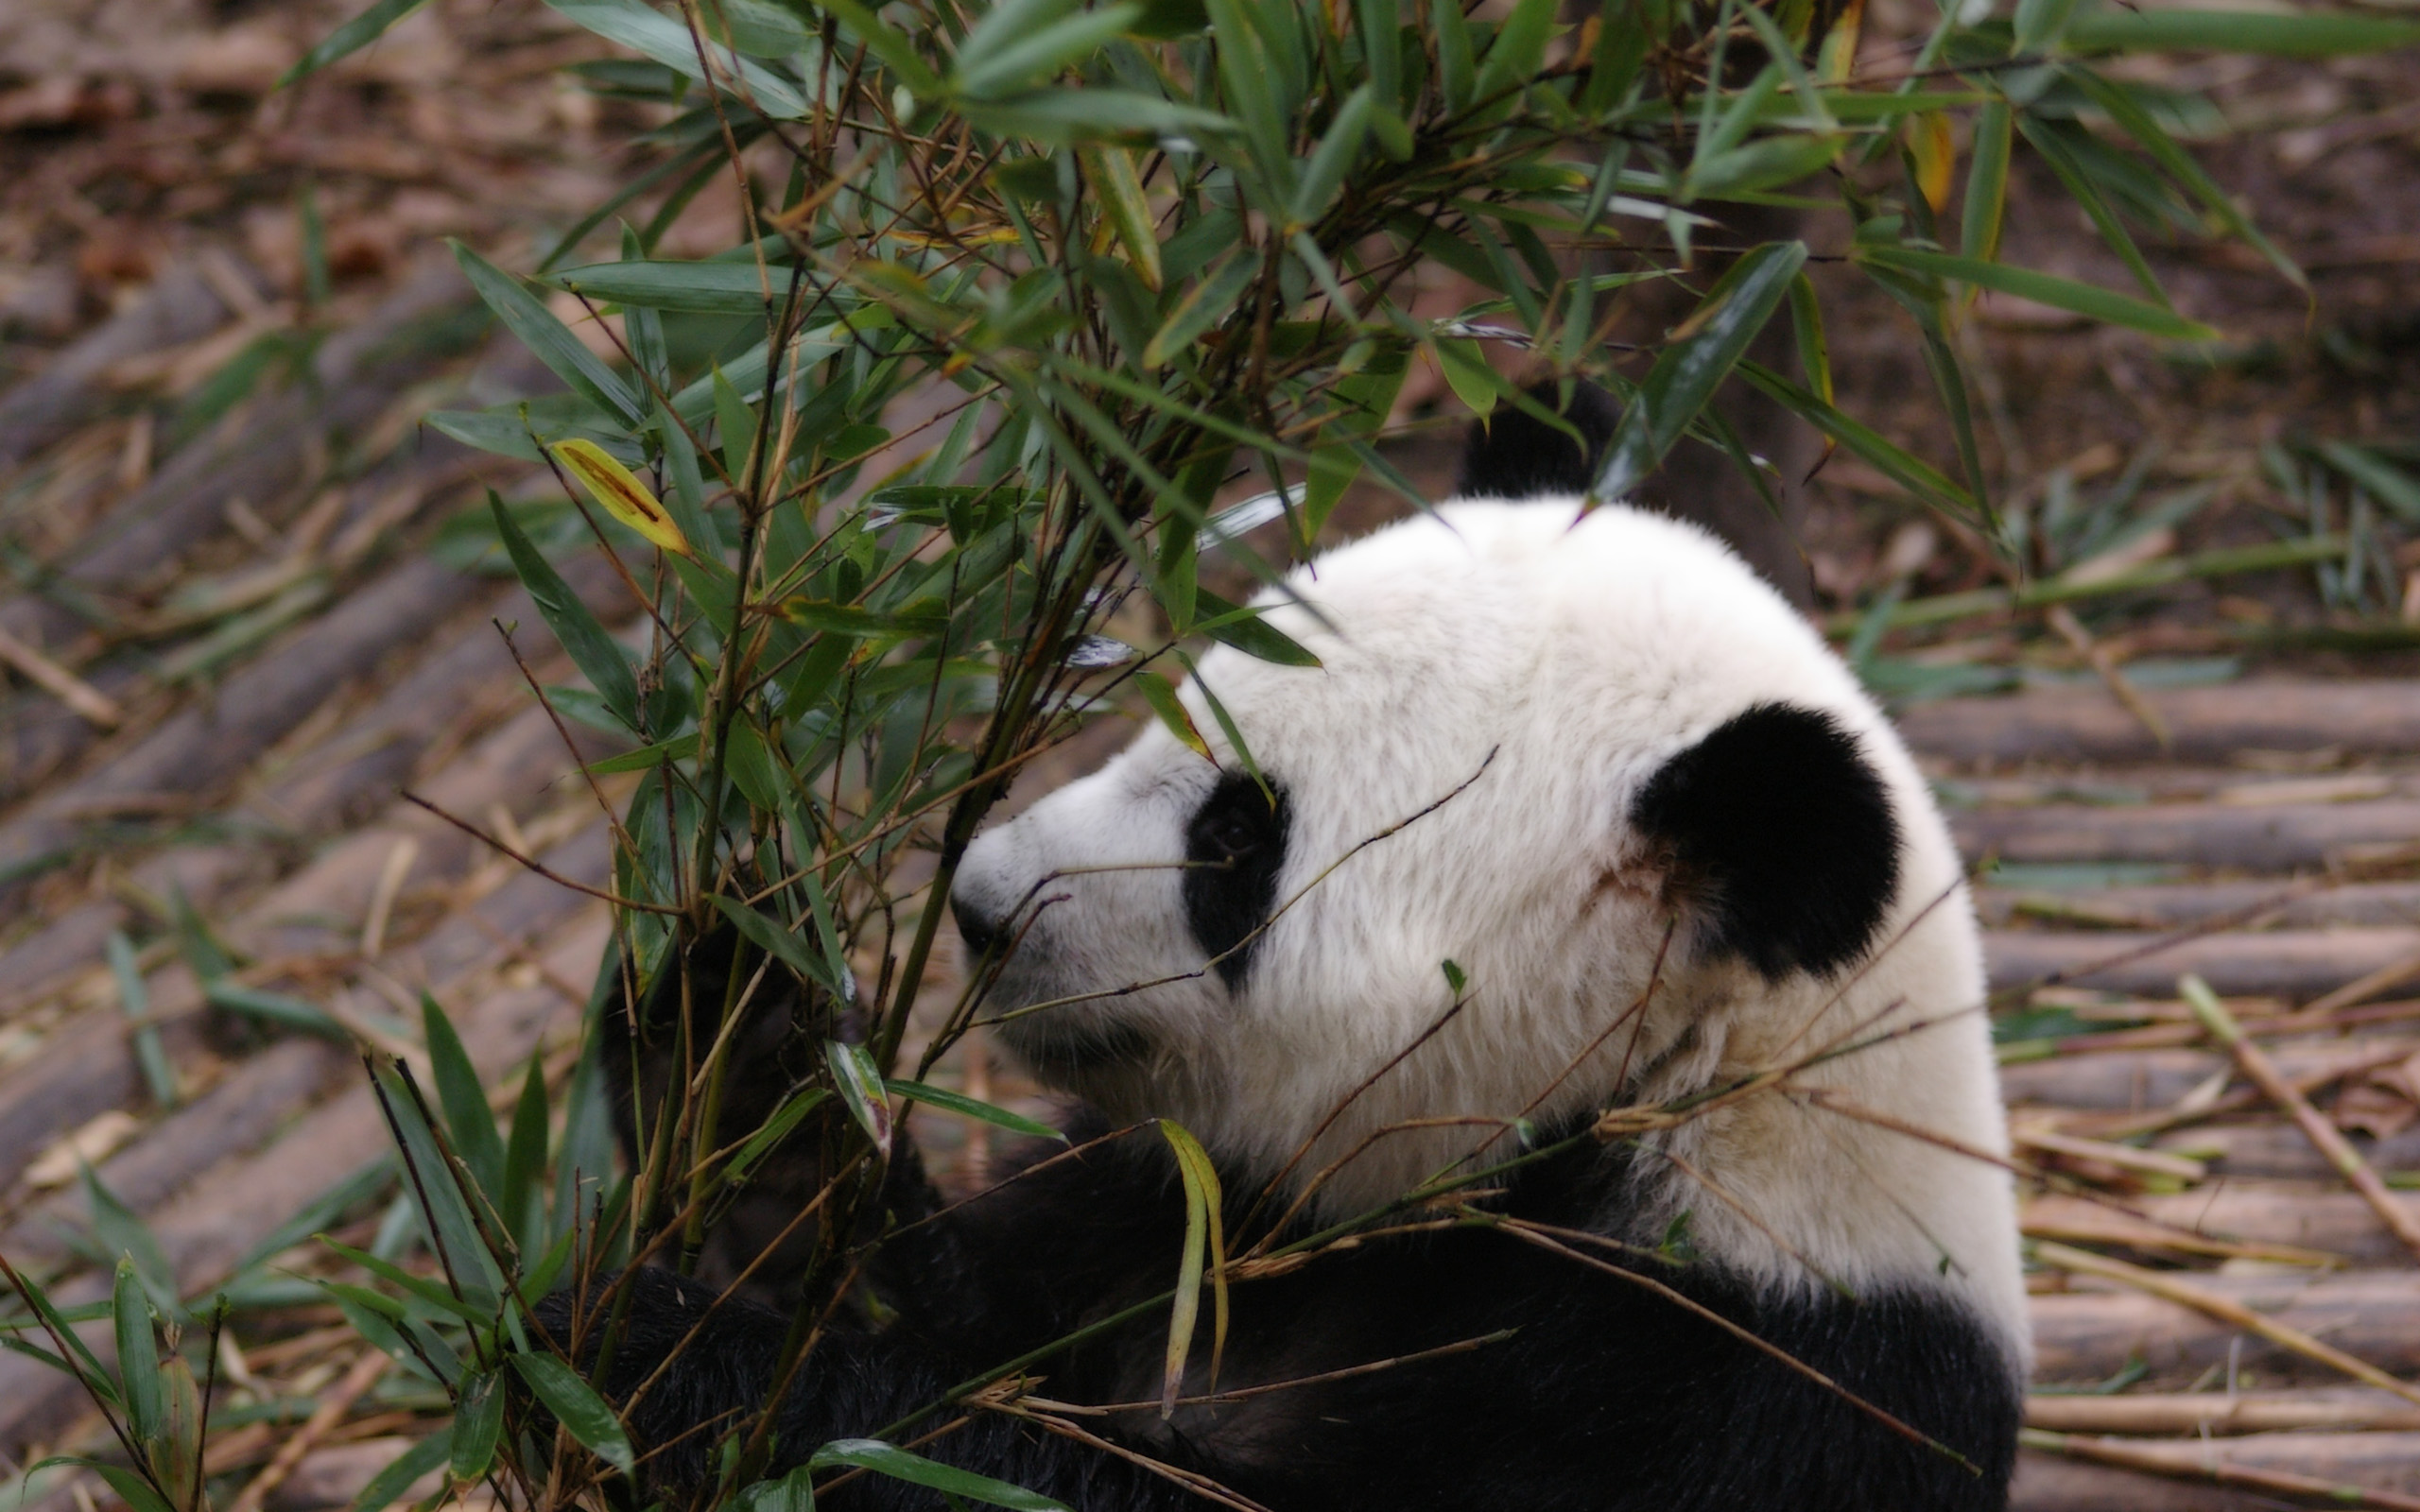 可爱的国宝熊猫呆萌微信头像图片大全 | 犀牛图片网